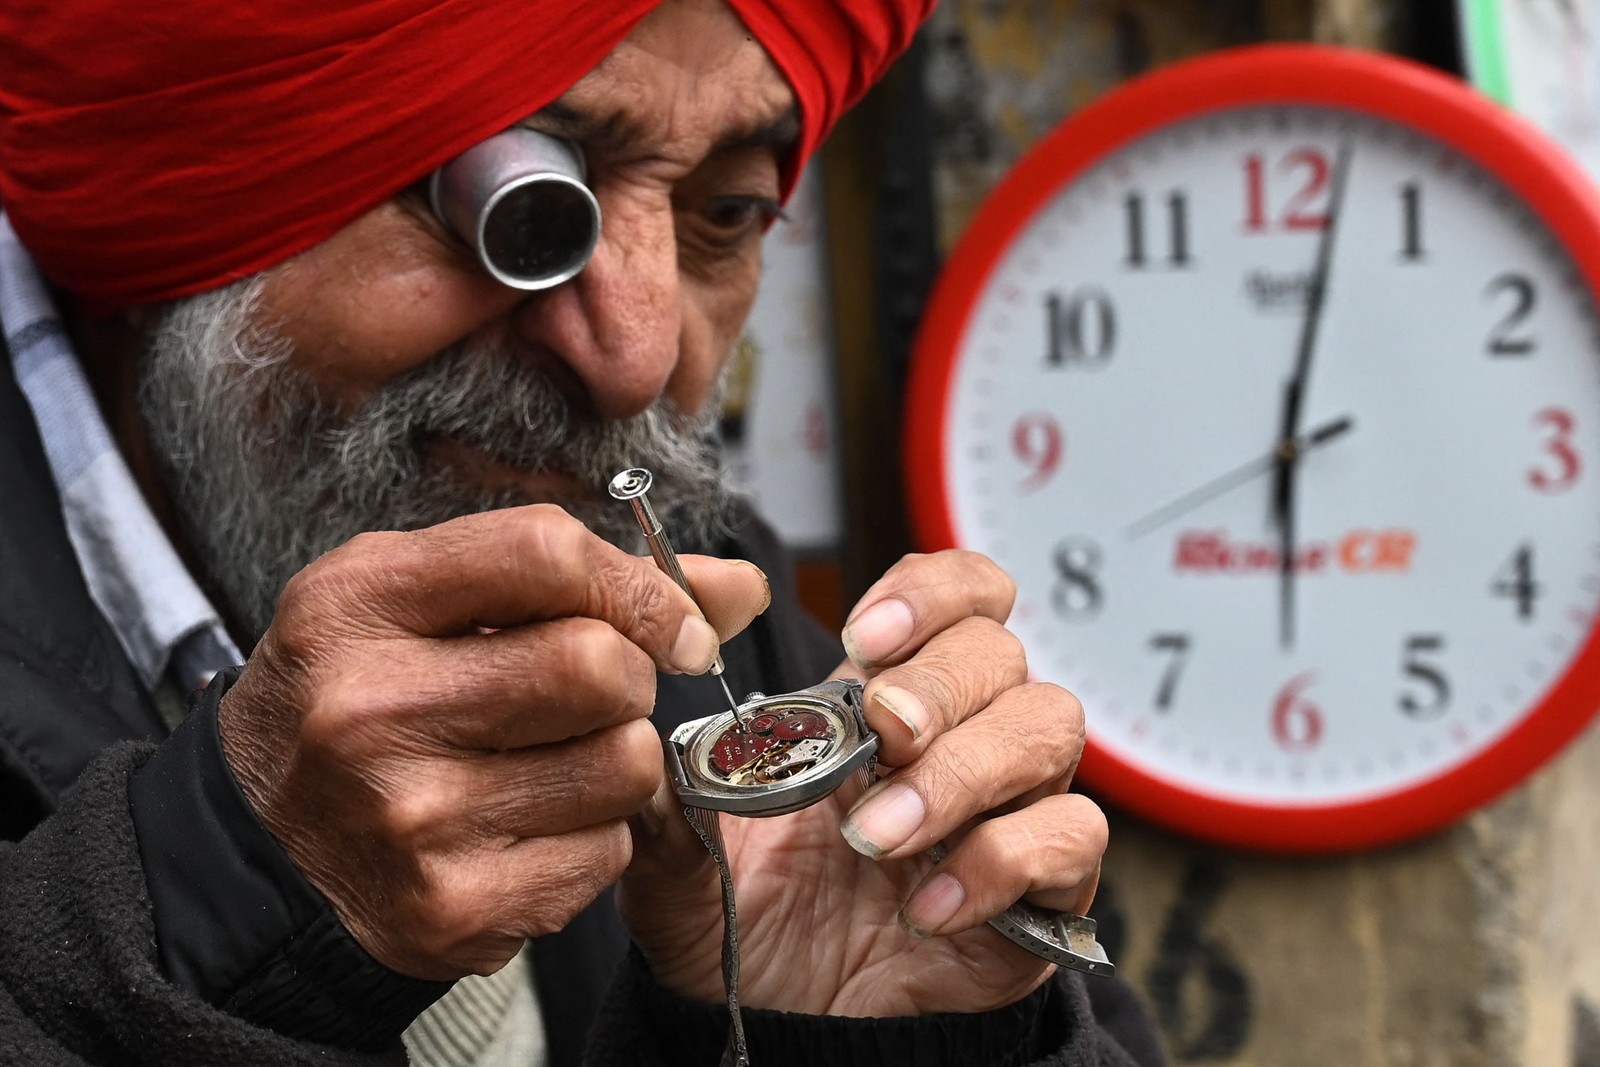 Relojoeiro trabalha em sua banca ao longo de uma rua em Amritsar, Índia — Foto: NARINDER NANU/AFP